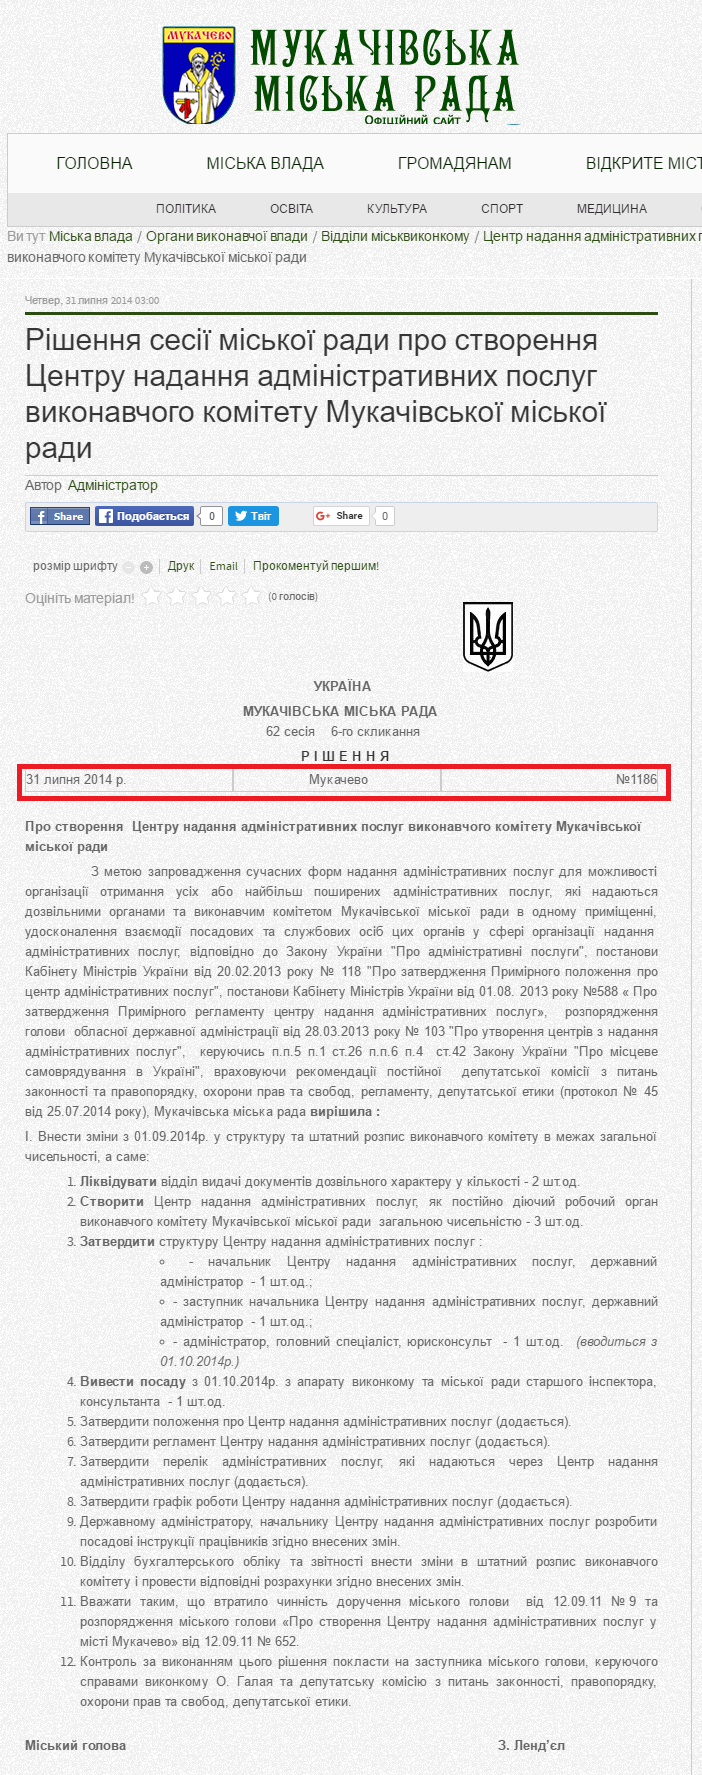 http://www.mukachevo-rada.gov.ua/index.php/2015-12-22-13-43-40/2015-11-22-17-36-42